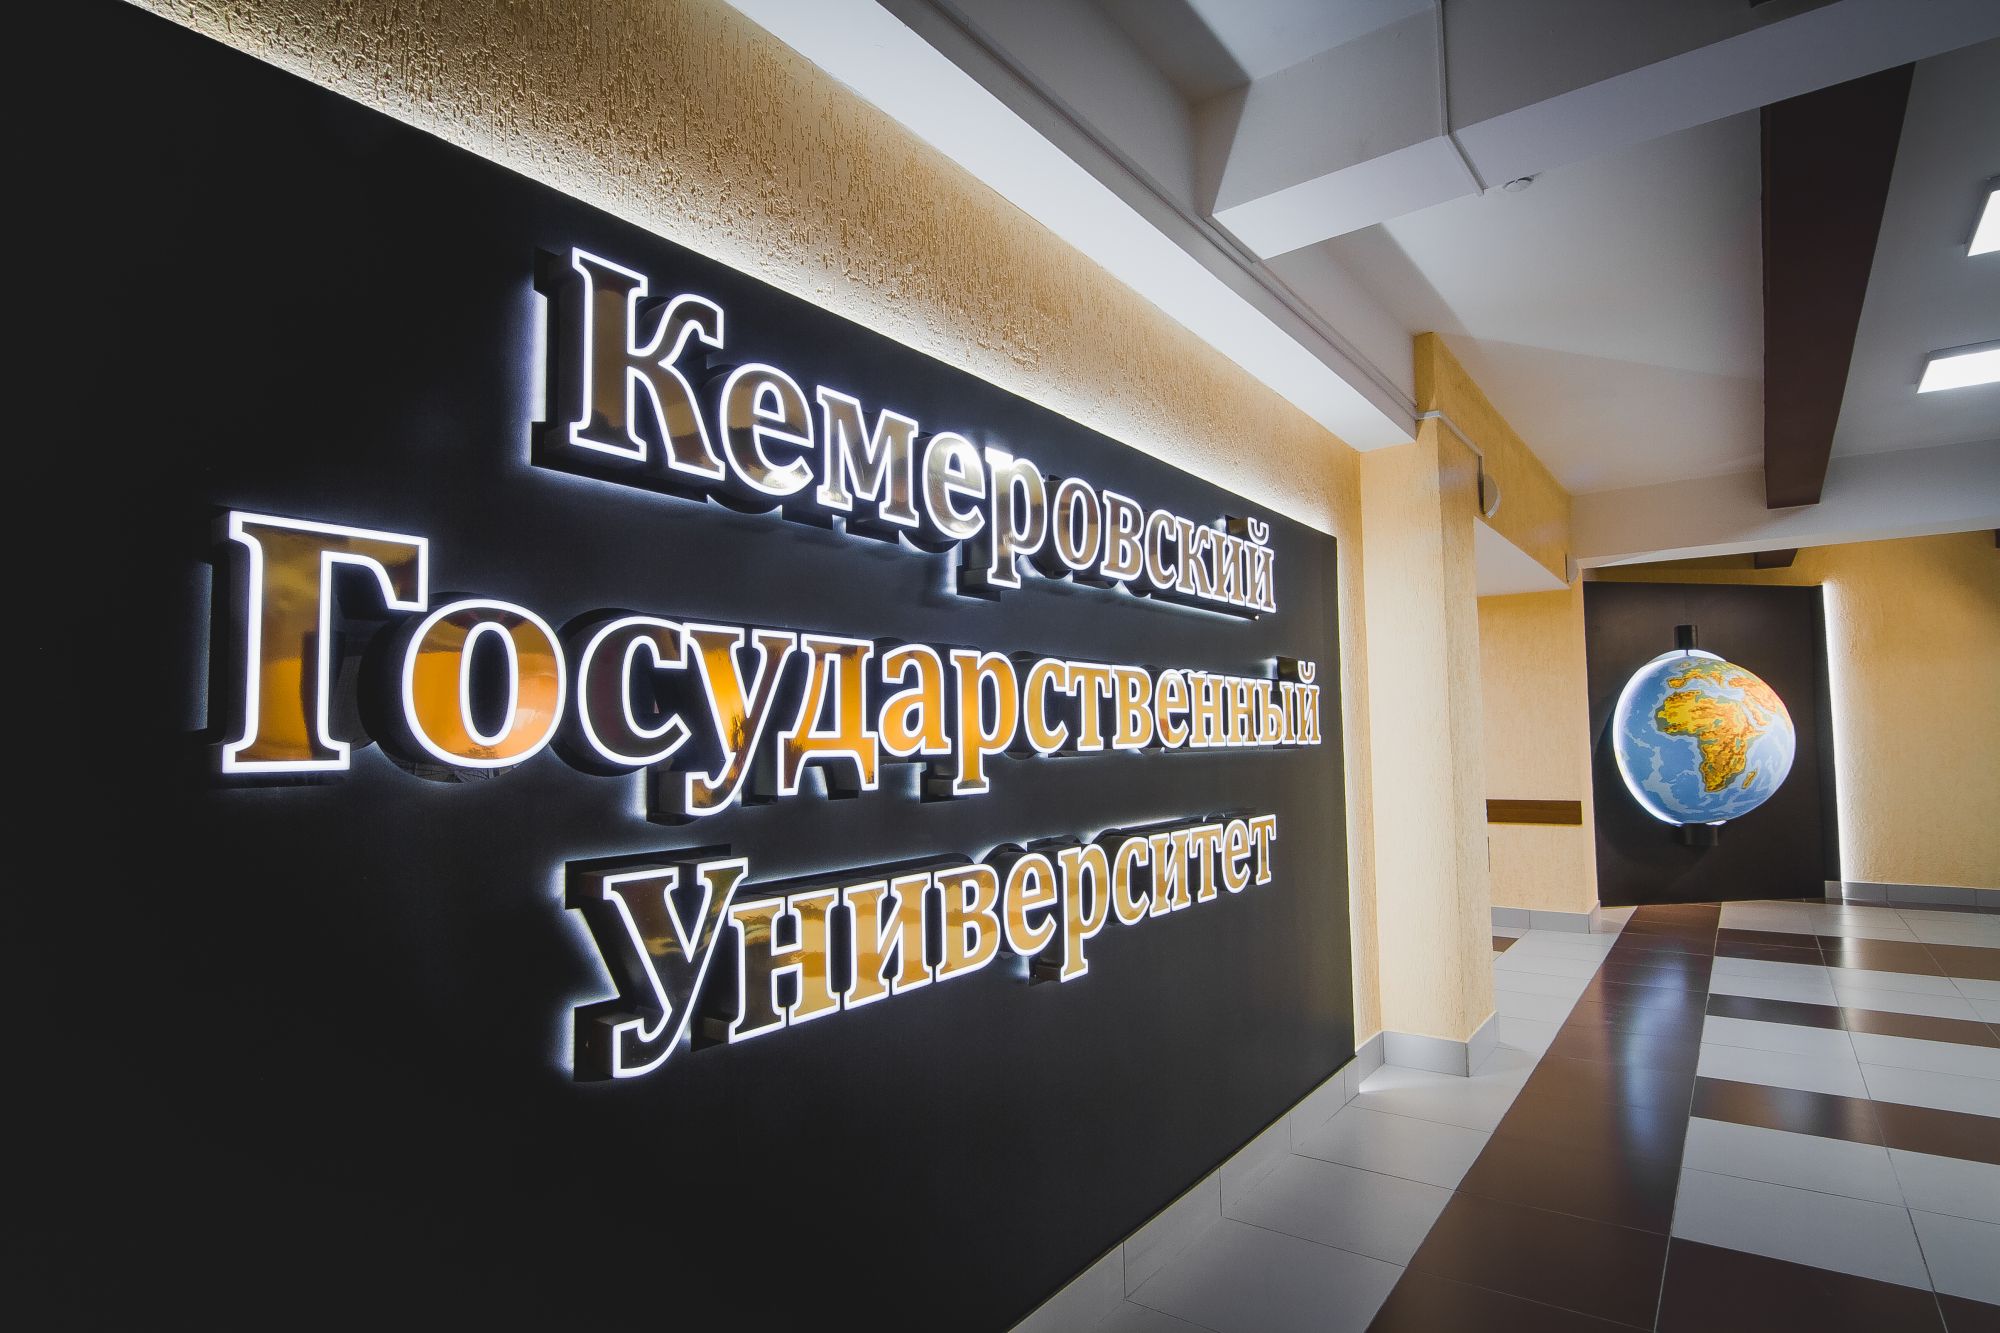 Более 200 студентов и аспирантов Кузбасса приняли участие в региональном этапе IХ Всероссийской олимпиады по истории российского предпринимательства